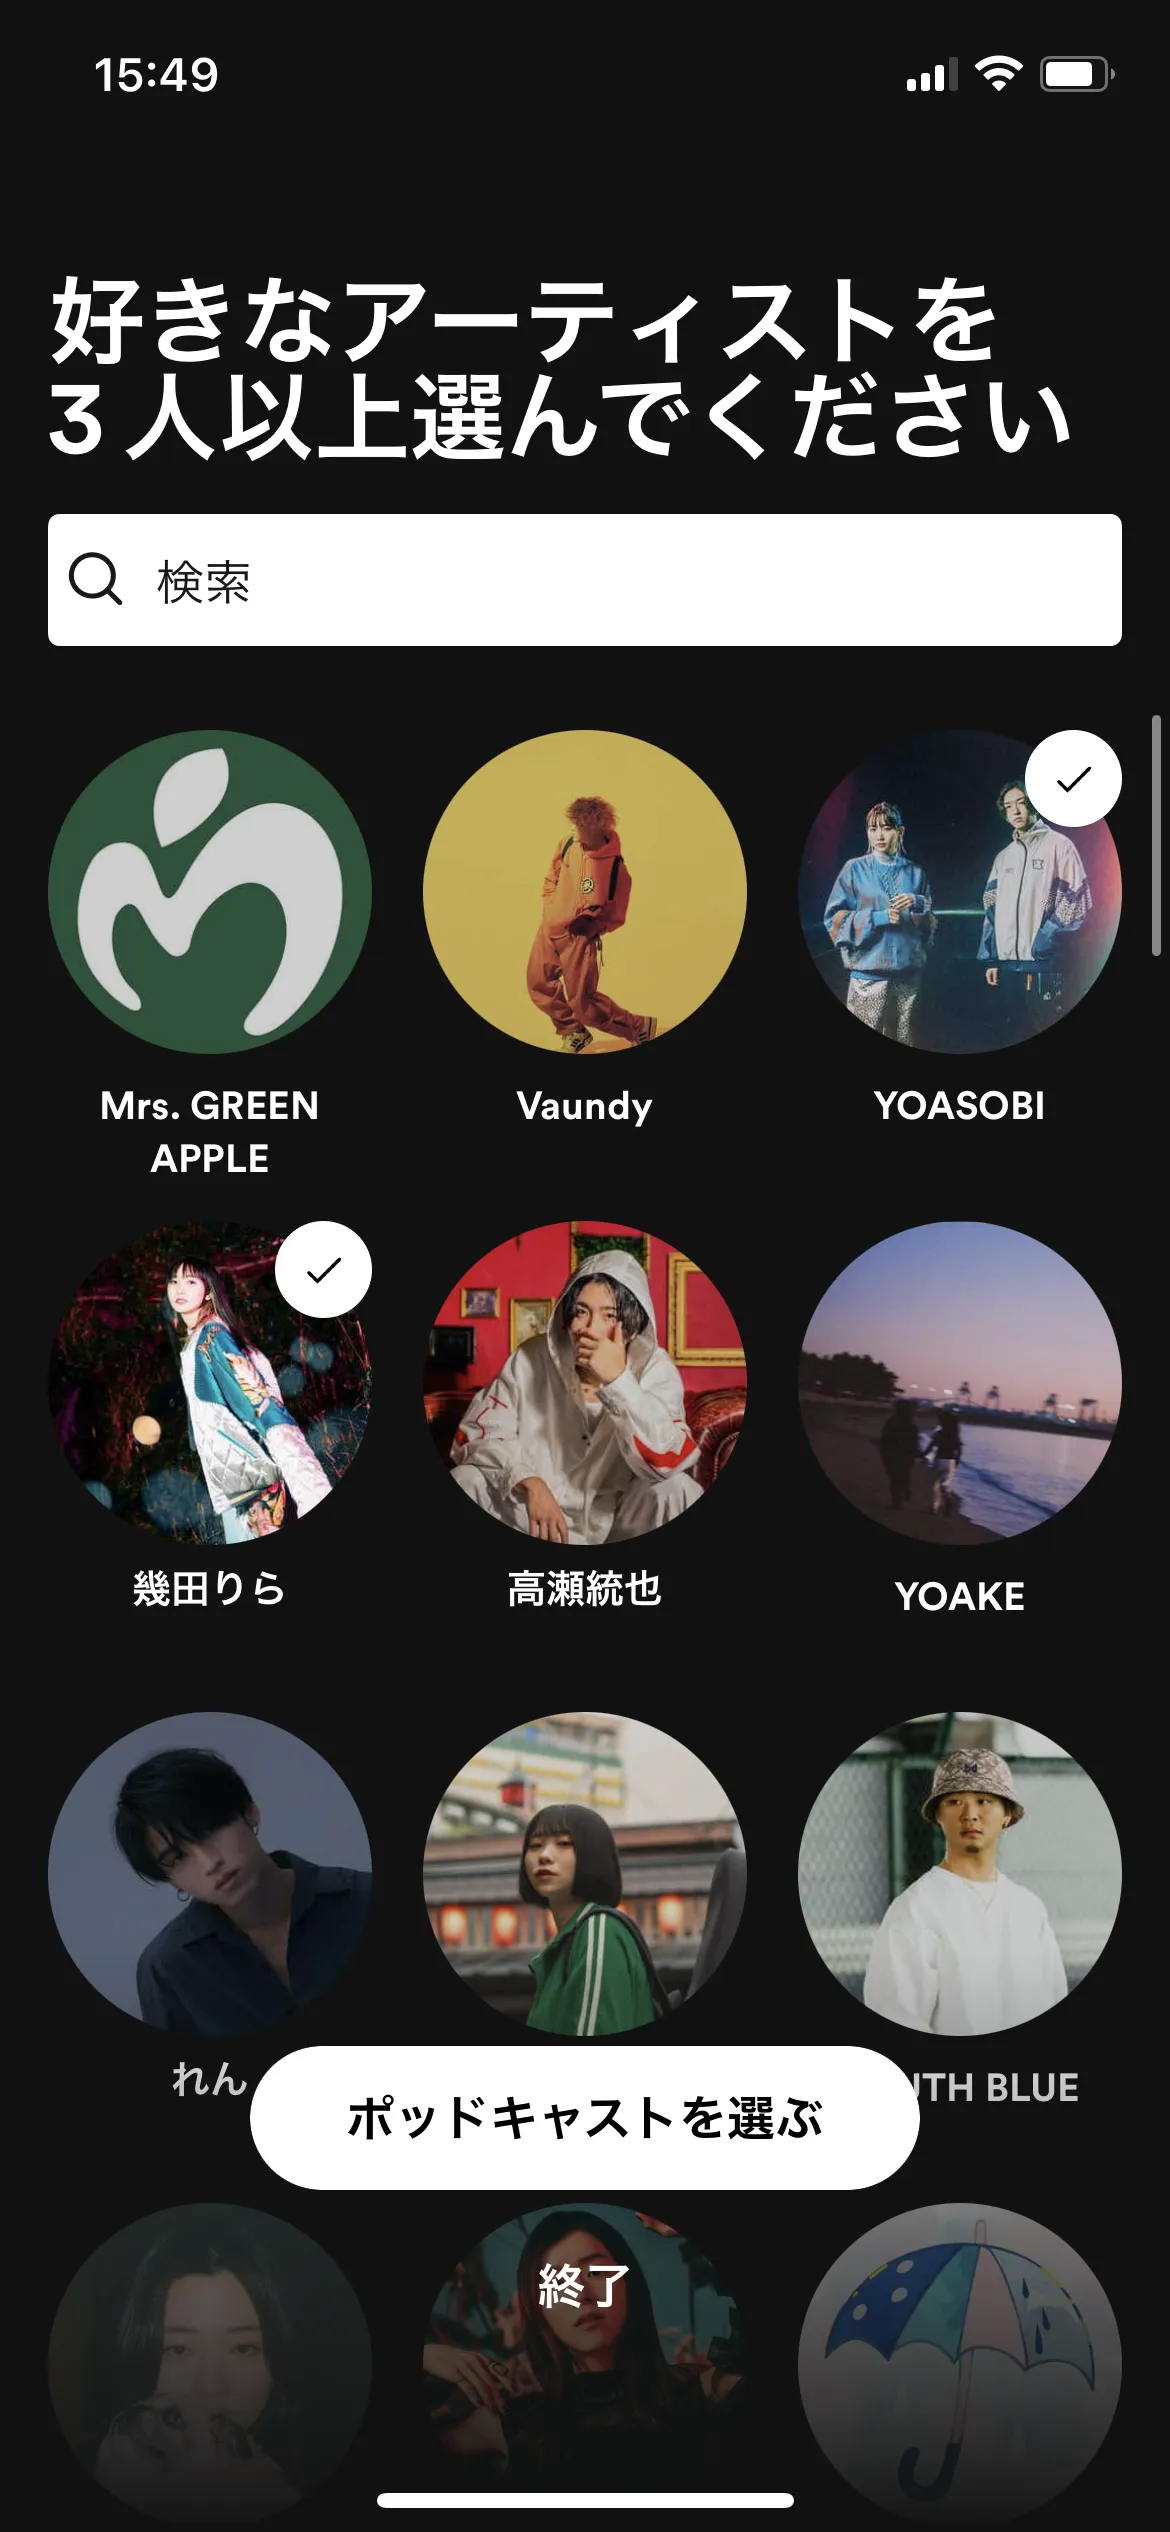 Spotify オンボーディング screen